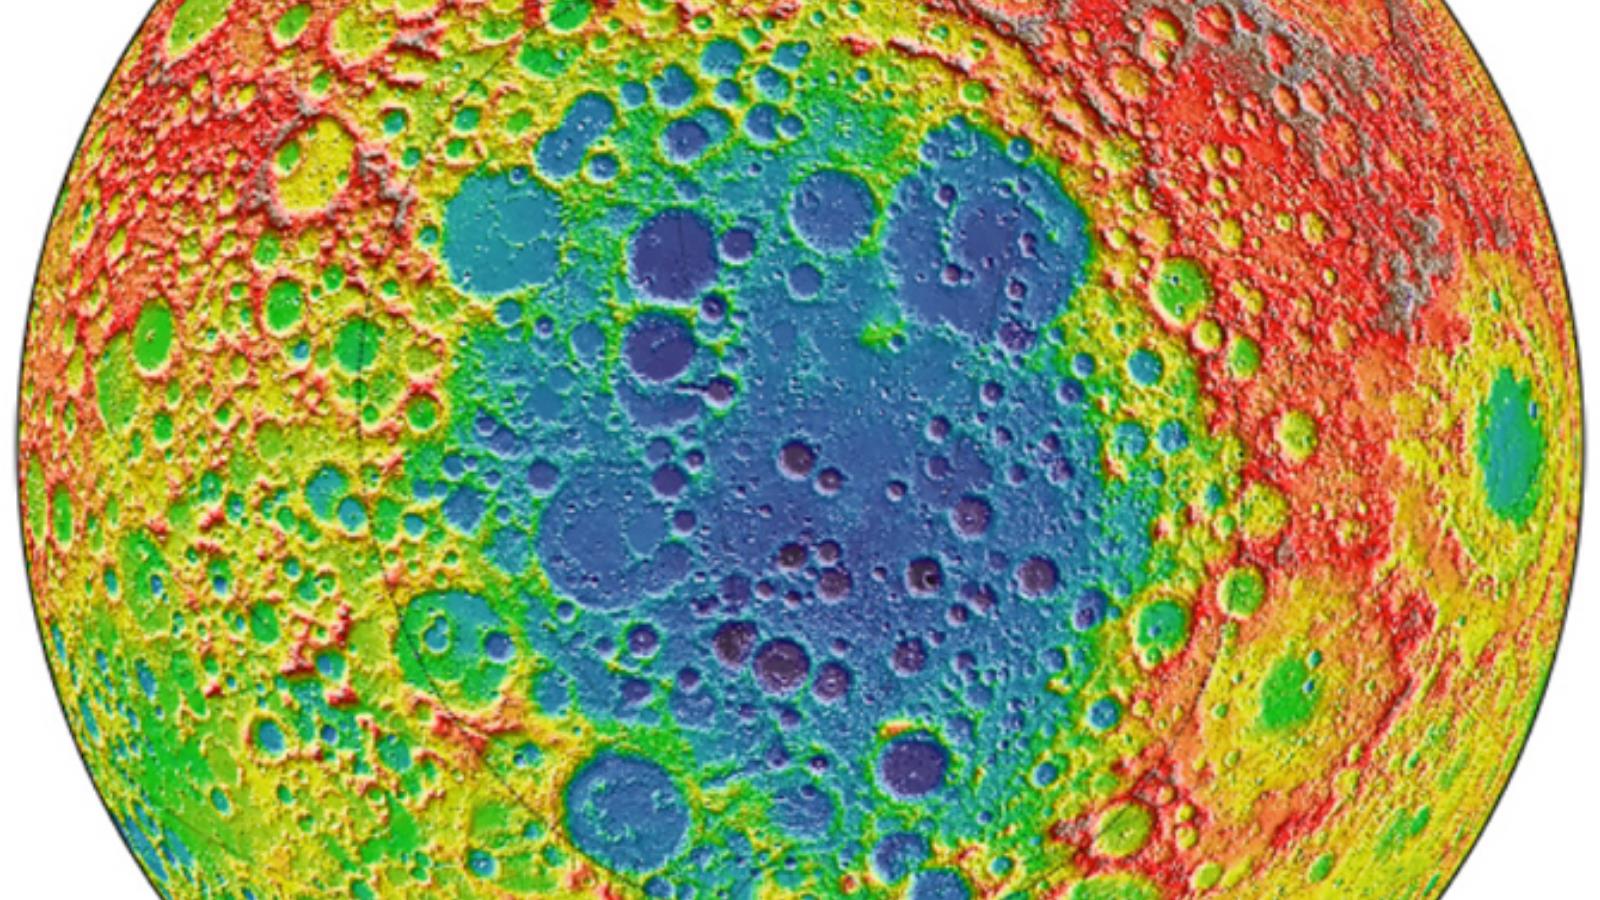 القطب الجنوبي للقمر حيث توجد فوهتا شرودنغر وزيمان وتنكشف بعض الطبقات العميقة للقمر (ناسا)